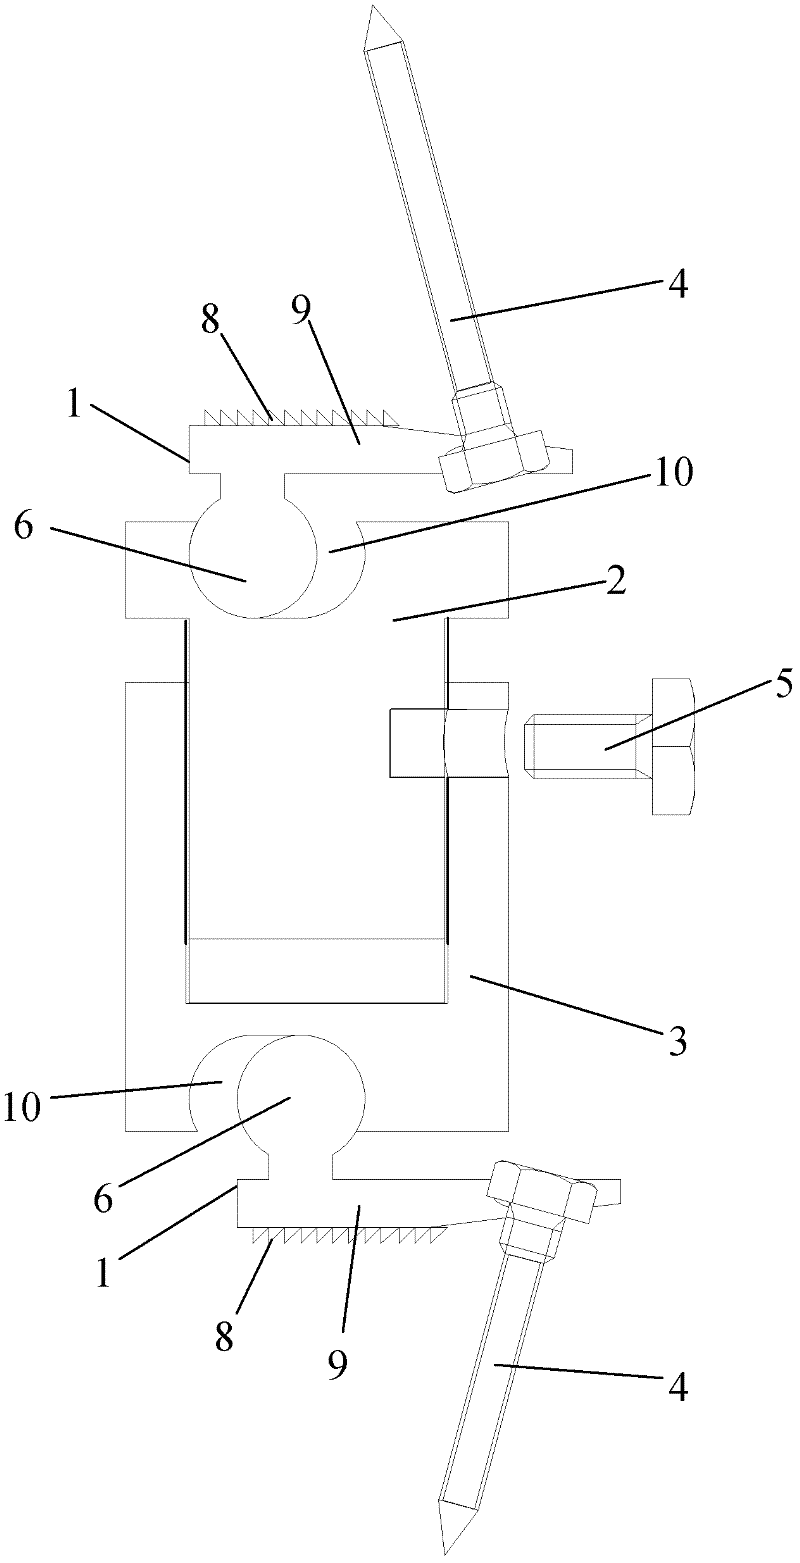 Adjustable artificial cervical vertebra and intervertebral connecting complex